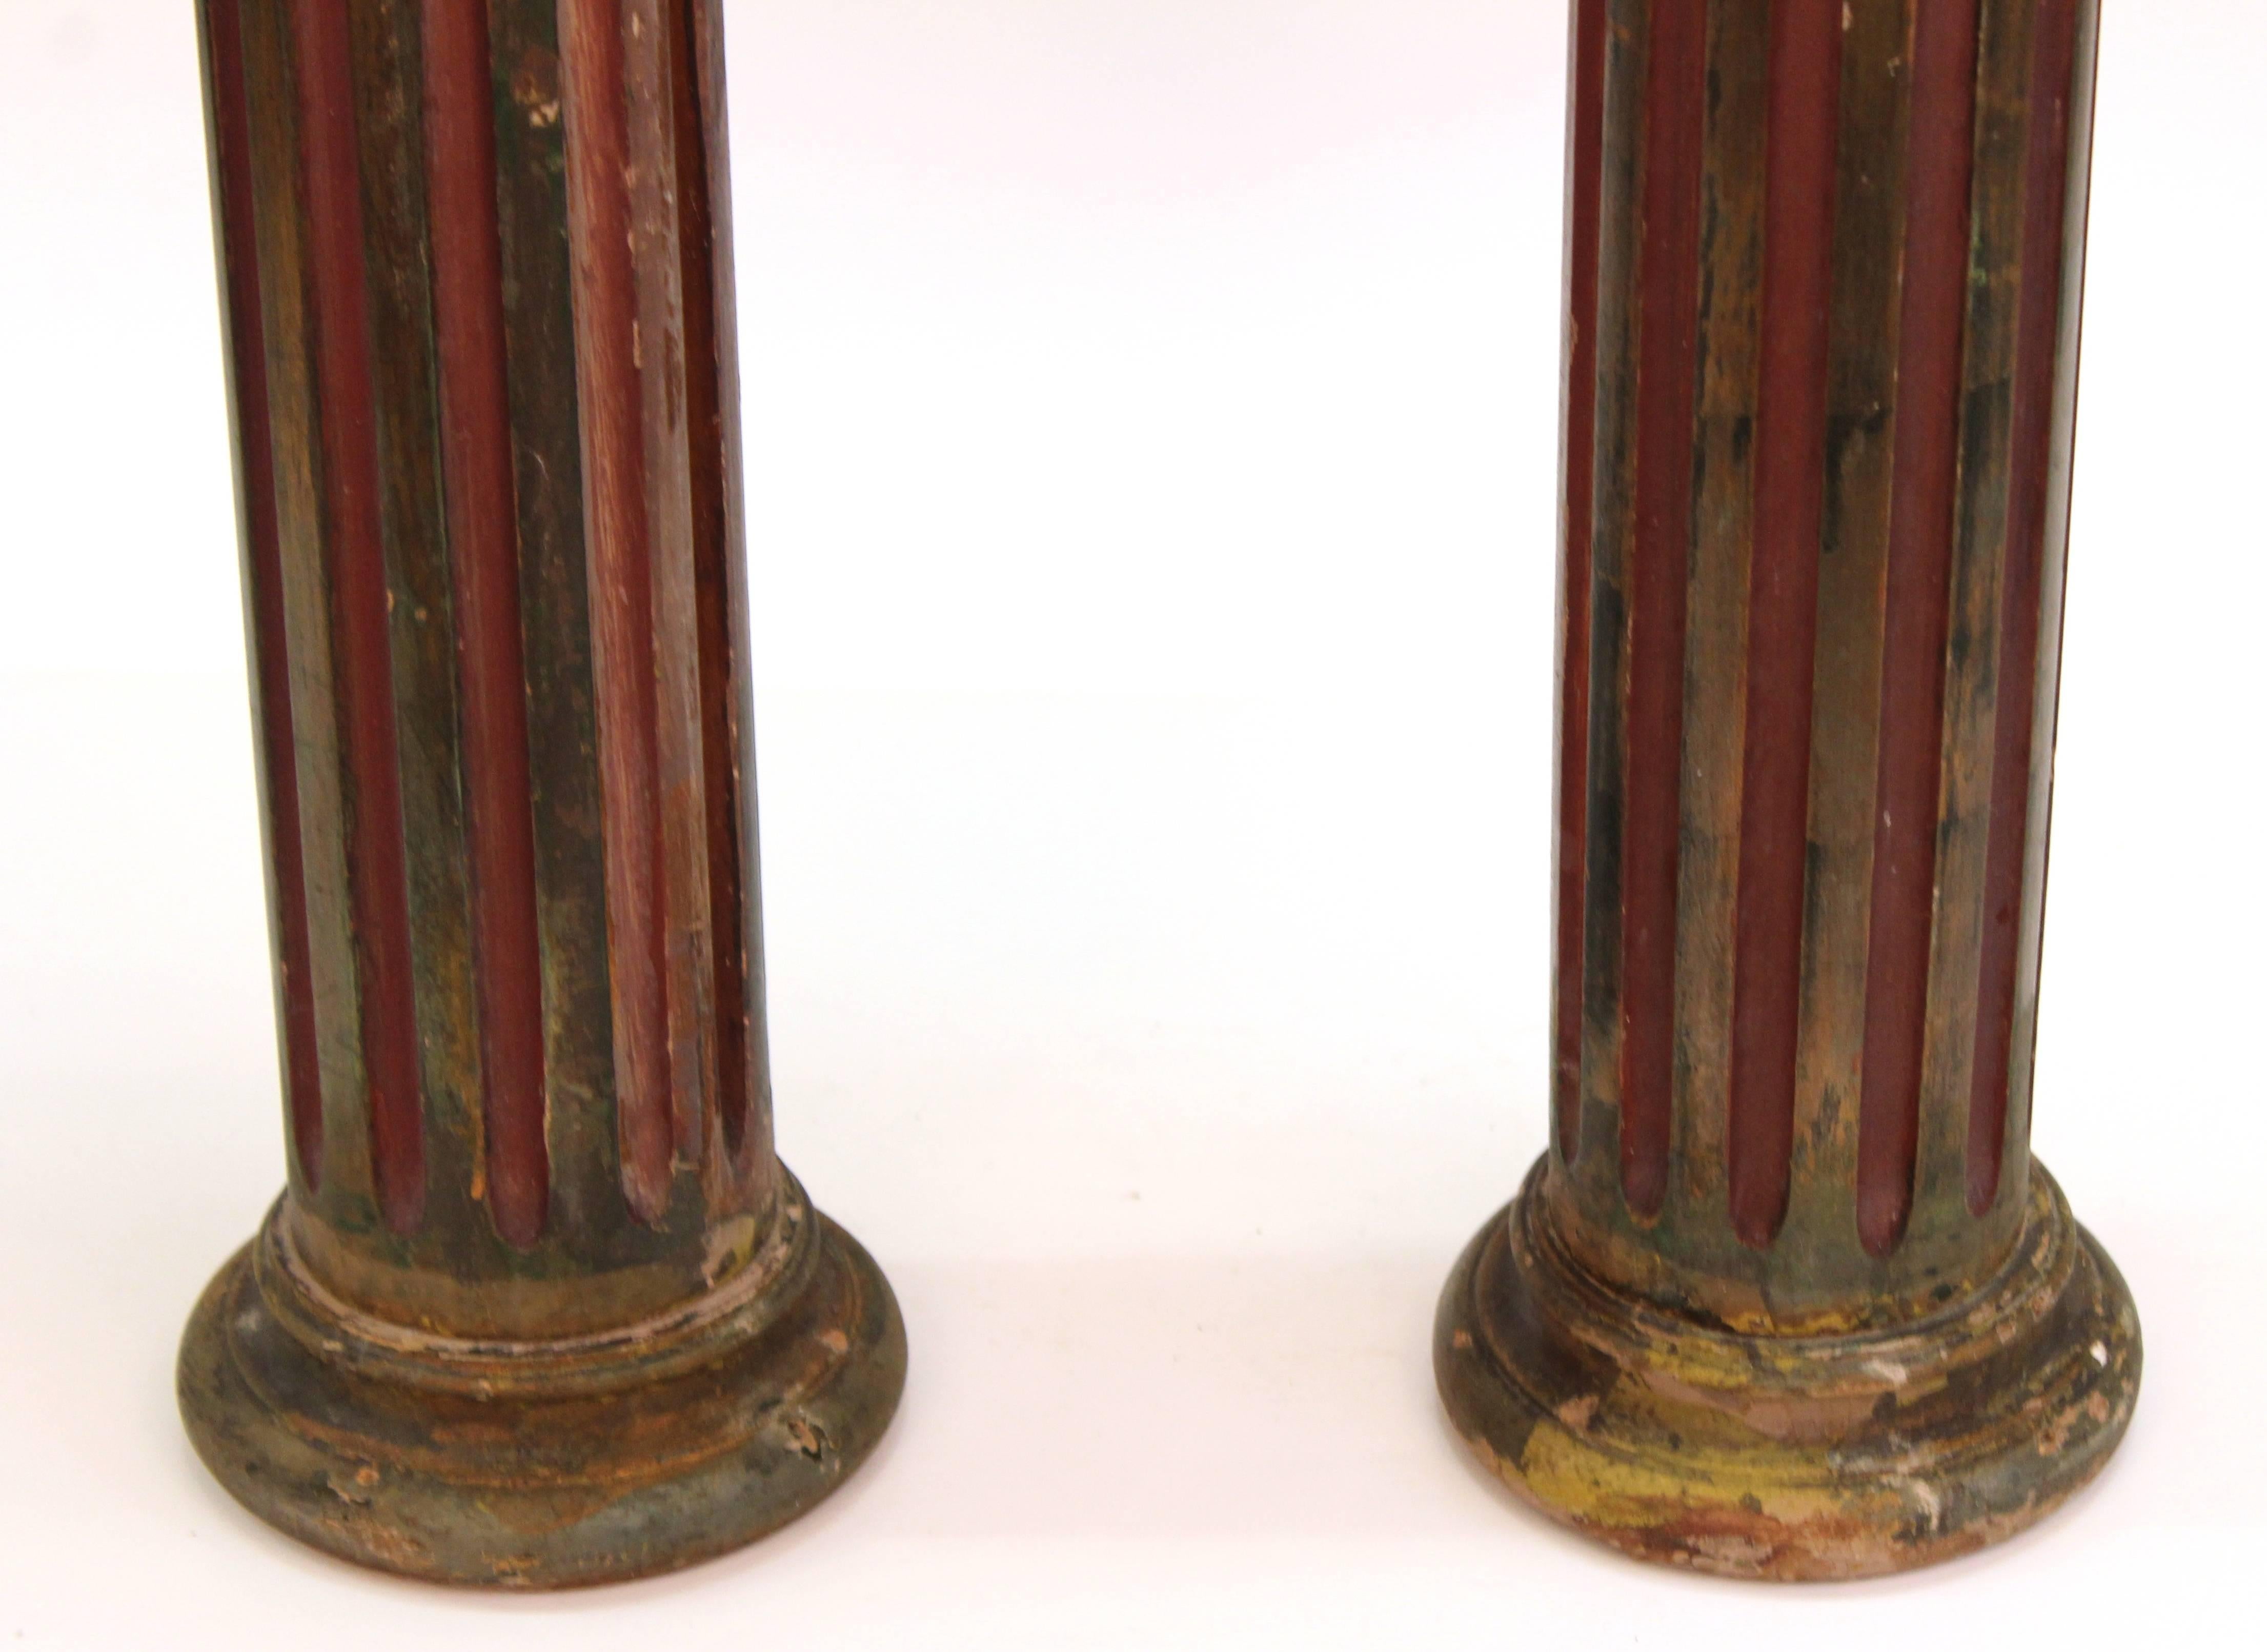 Viktorianische korinthische Säulen aus Holz mit Vögeln auf der Oberseite, viktorianisch (Unbekannt)